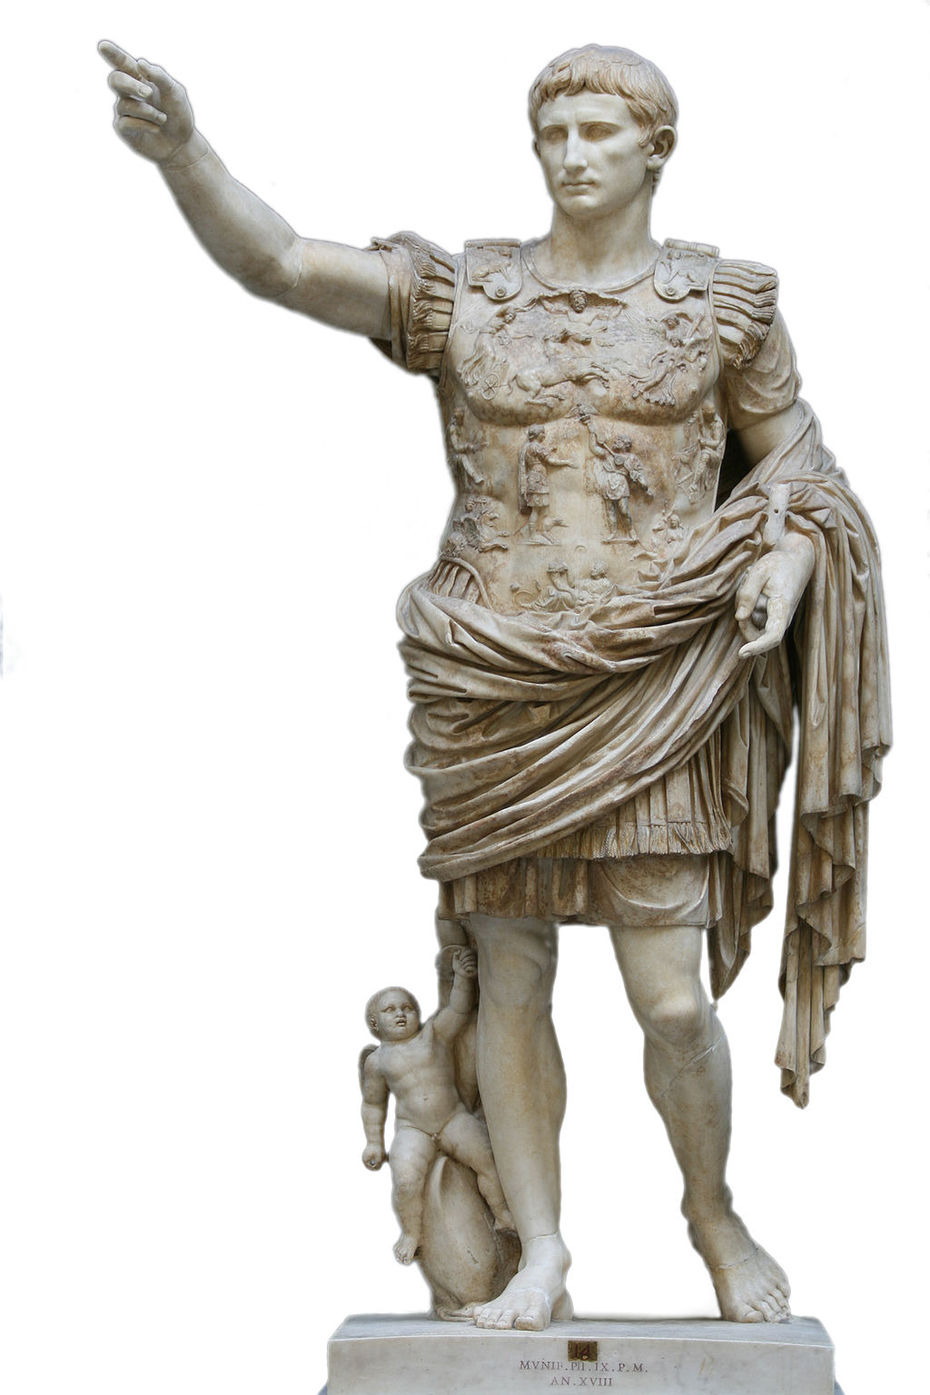 Augustusstatue von Prima Porta (Rom, Vatikanische Museen)